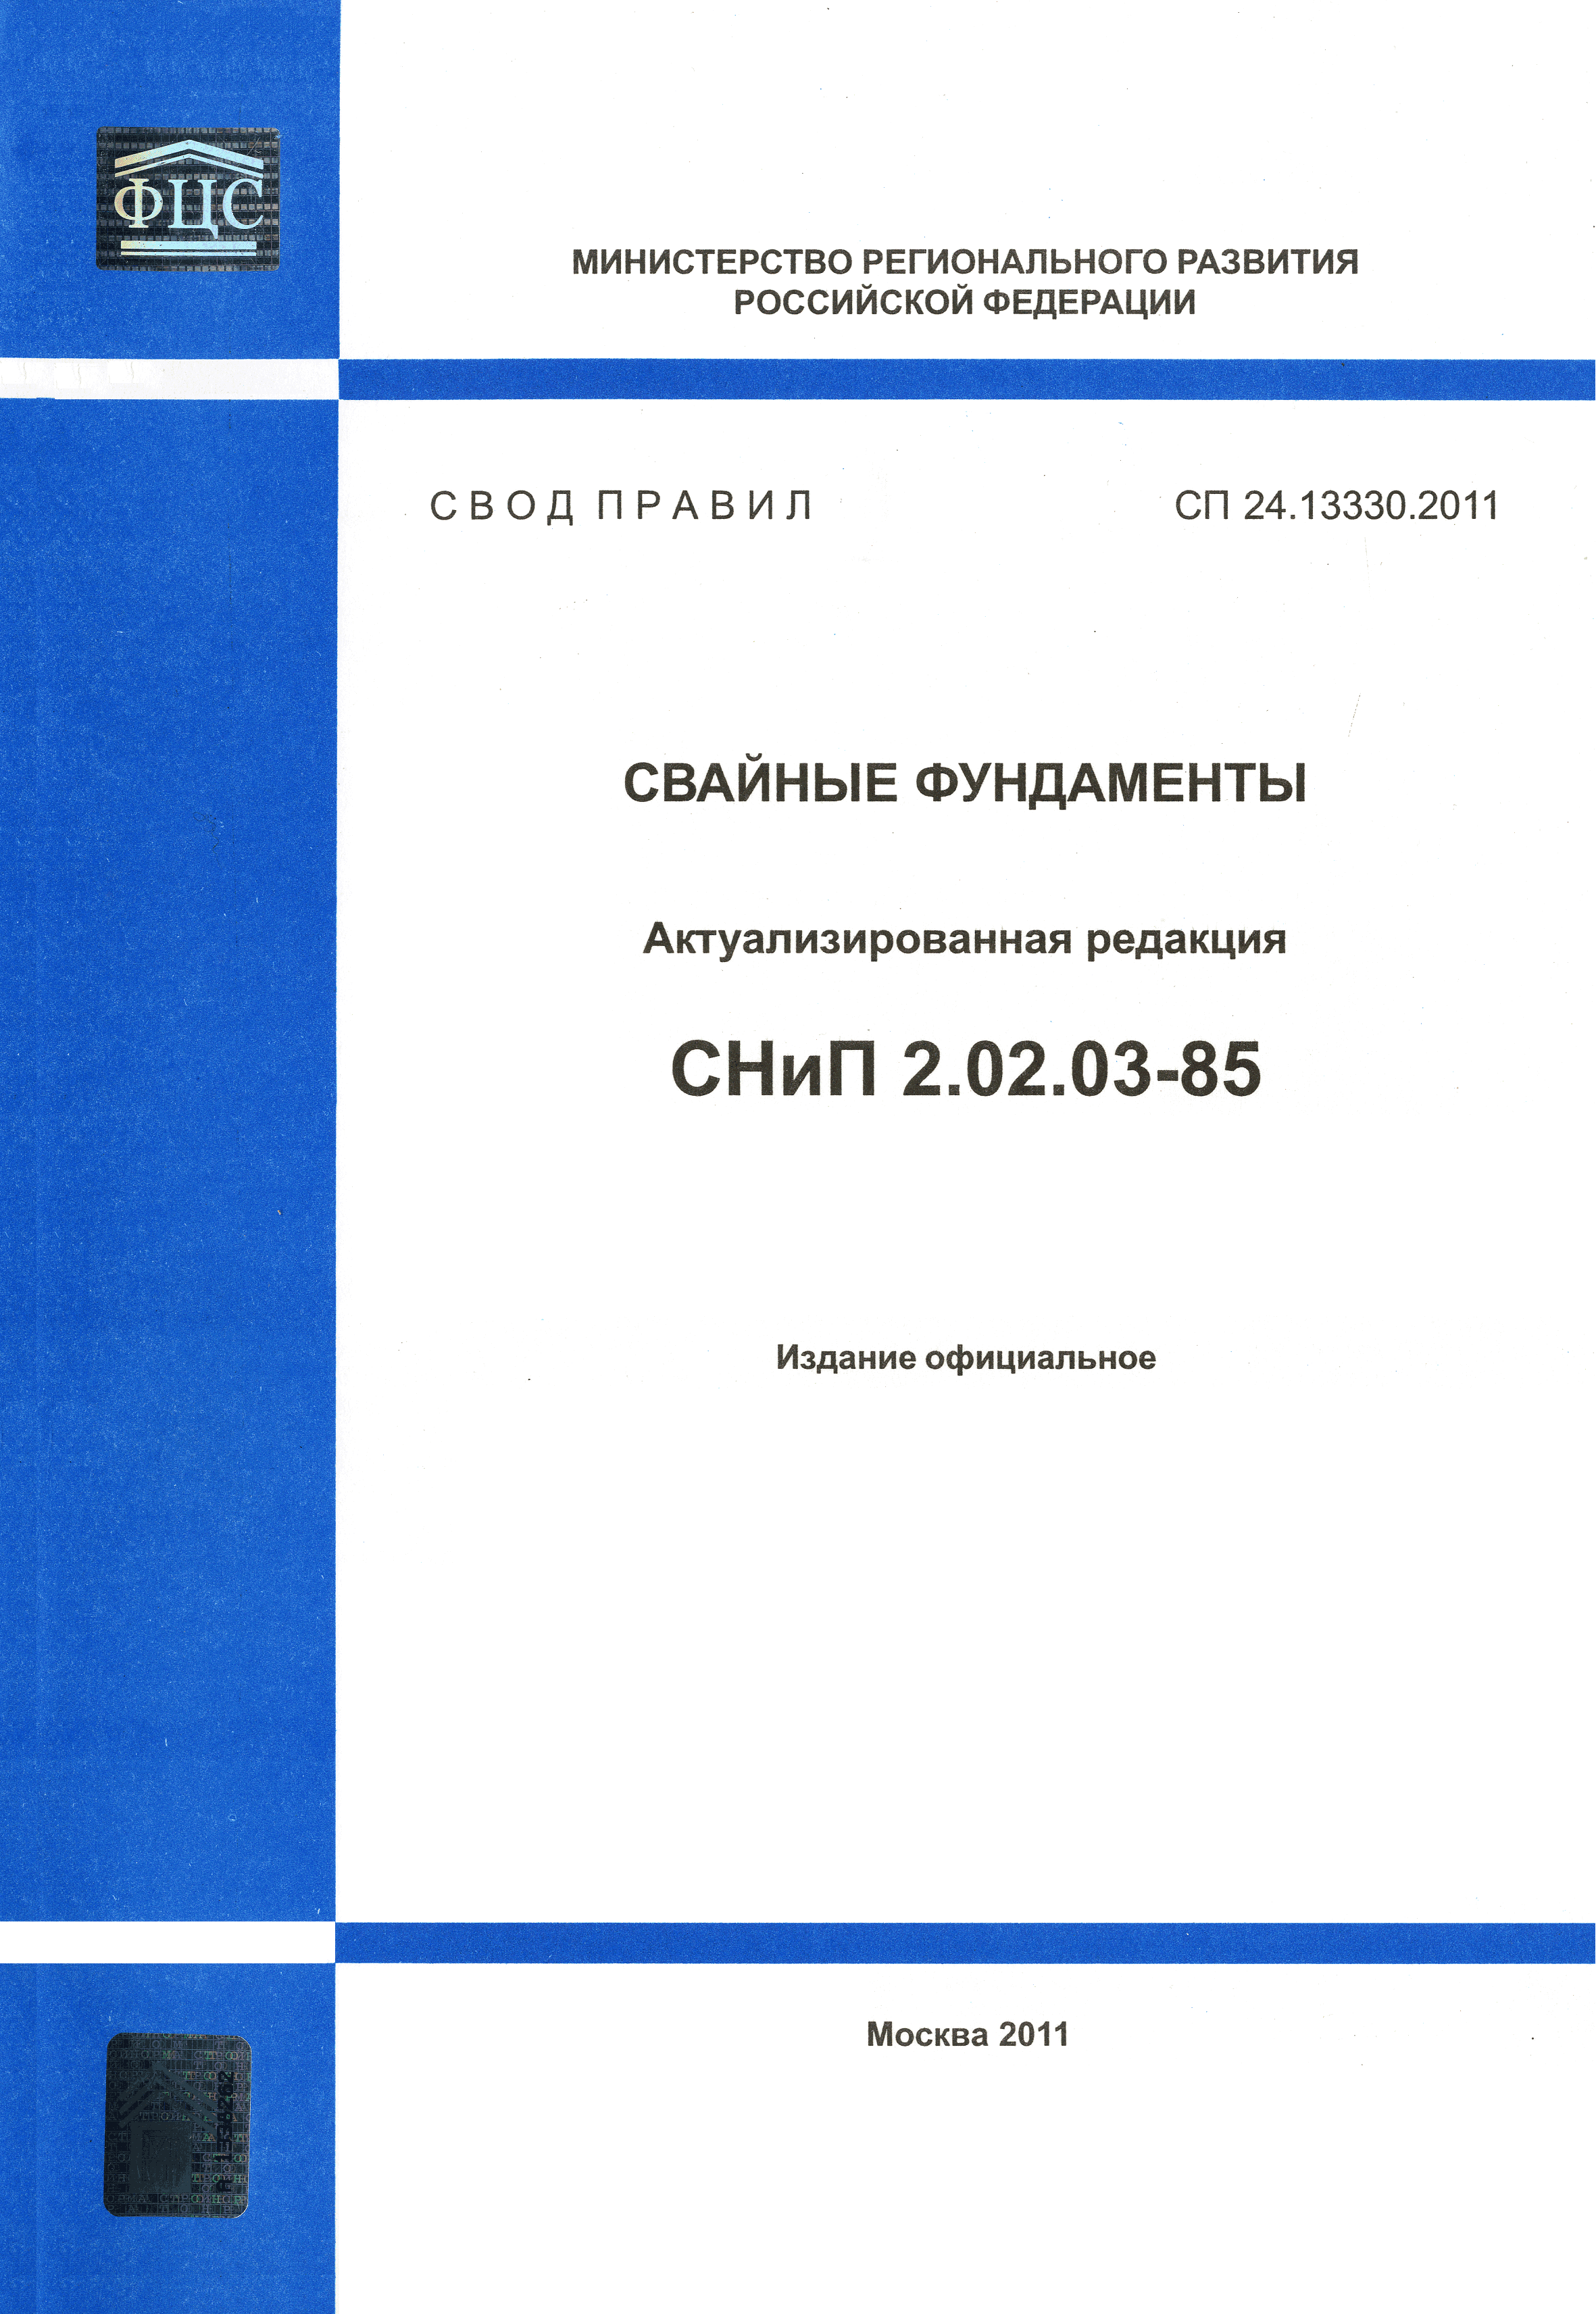 СП 24.13330.2011